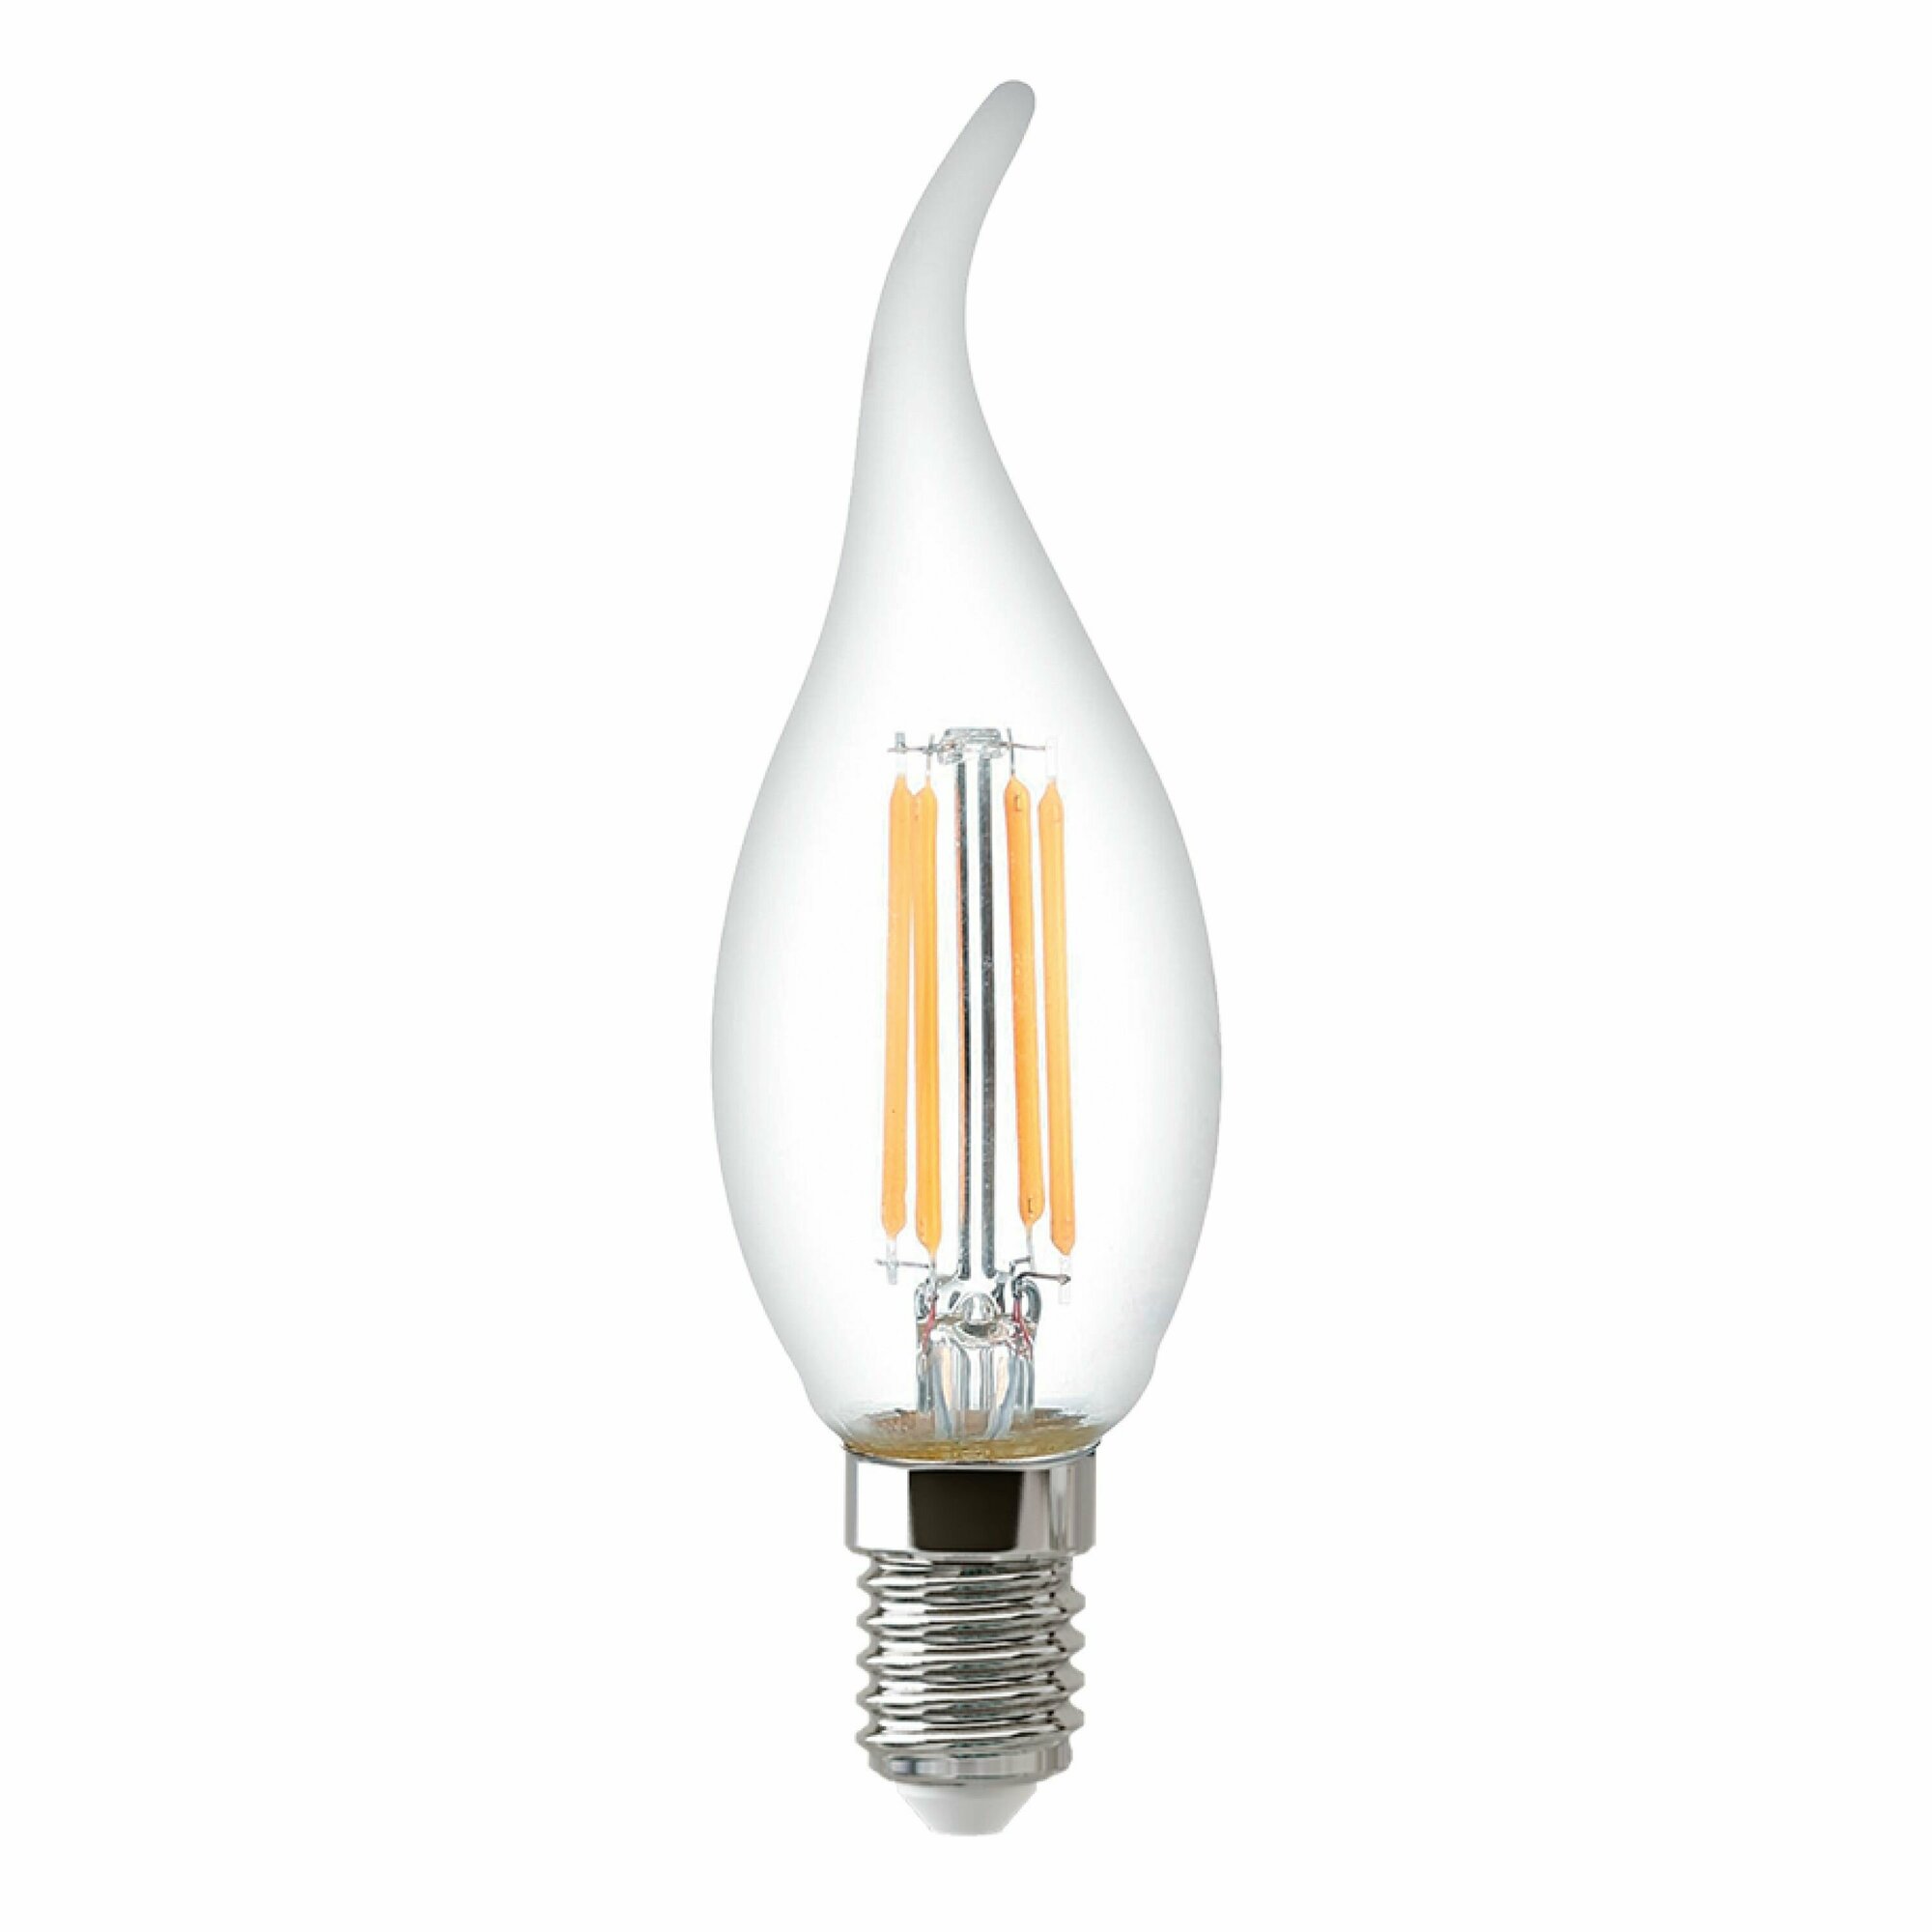 Лампочка Thomson филаментная TH-B2387 9 Вт, E14, 6500K, свеча на ветру, холодный белый свет